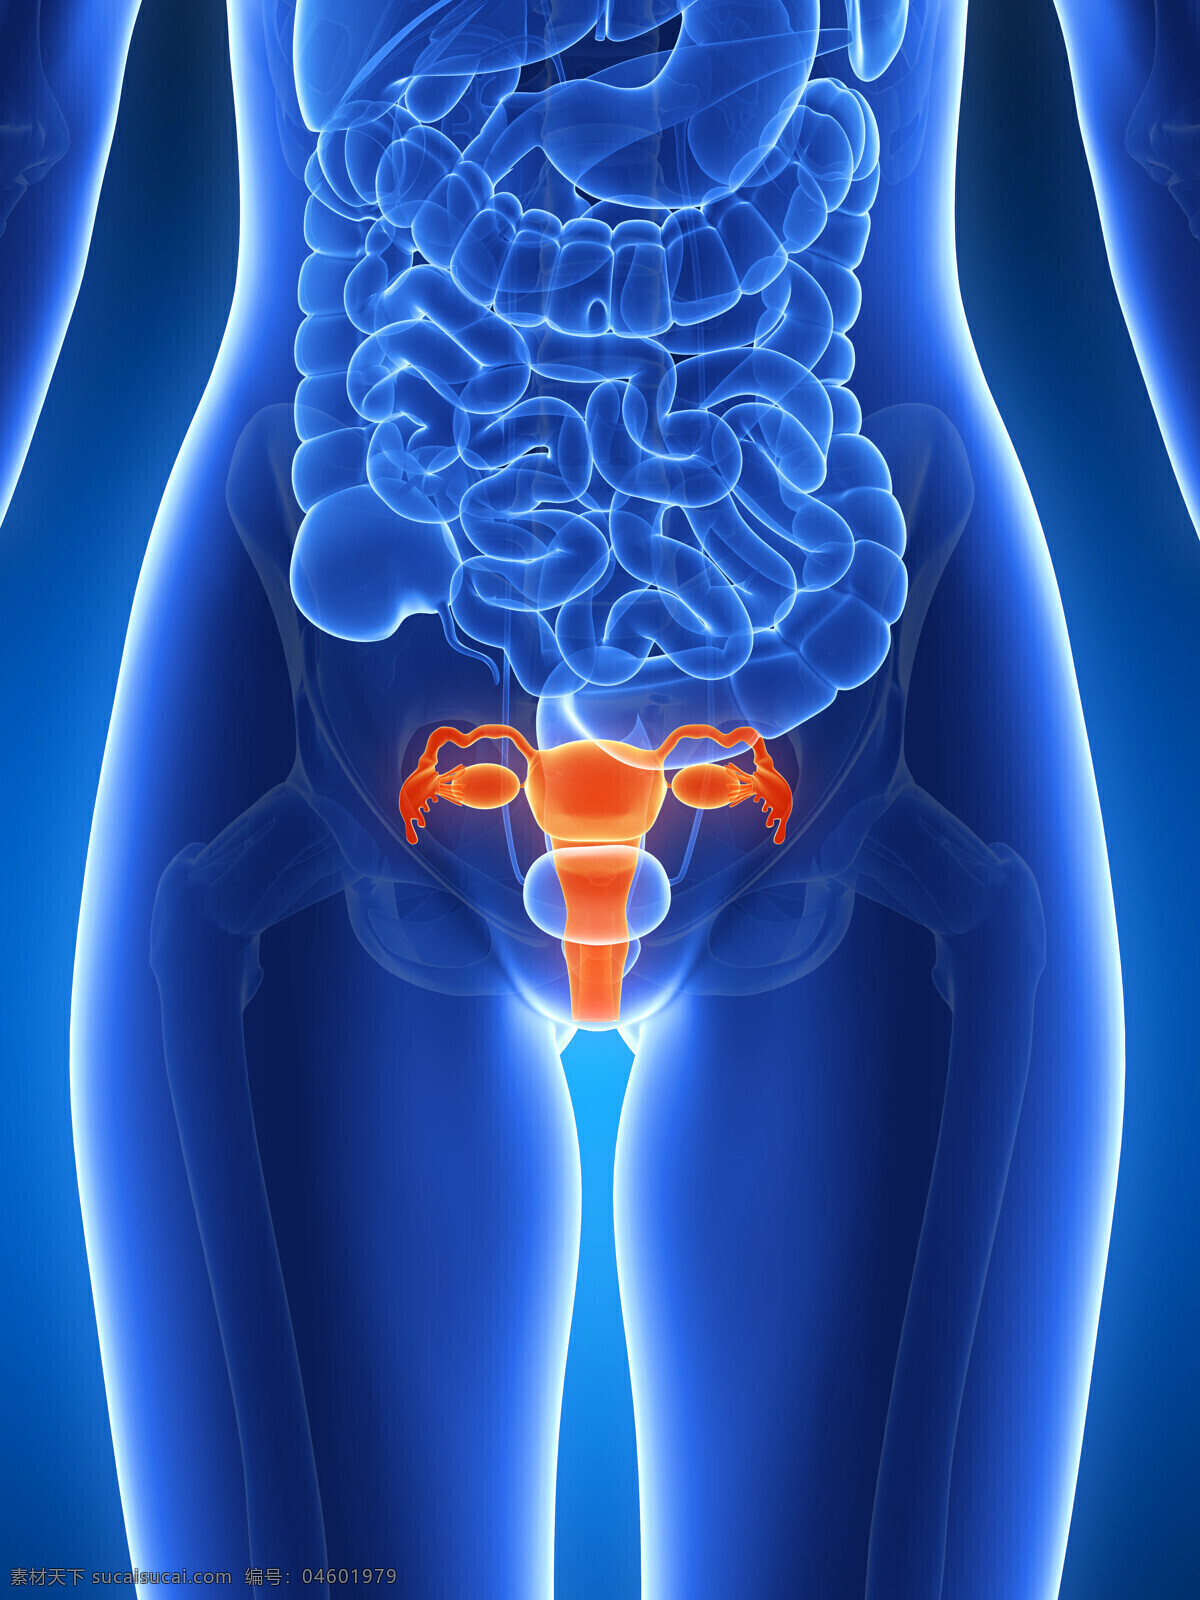 子宫人体器官 子宫 人体 人体器官 人体组织 人体结构 医学 医疗 科学 医疗护理 现代科技